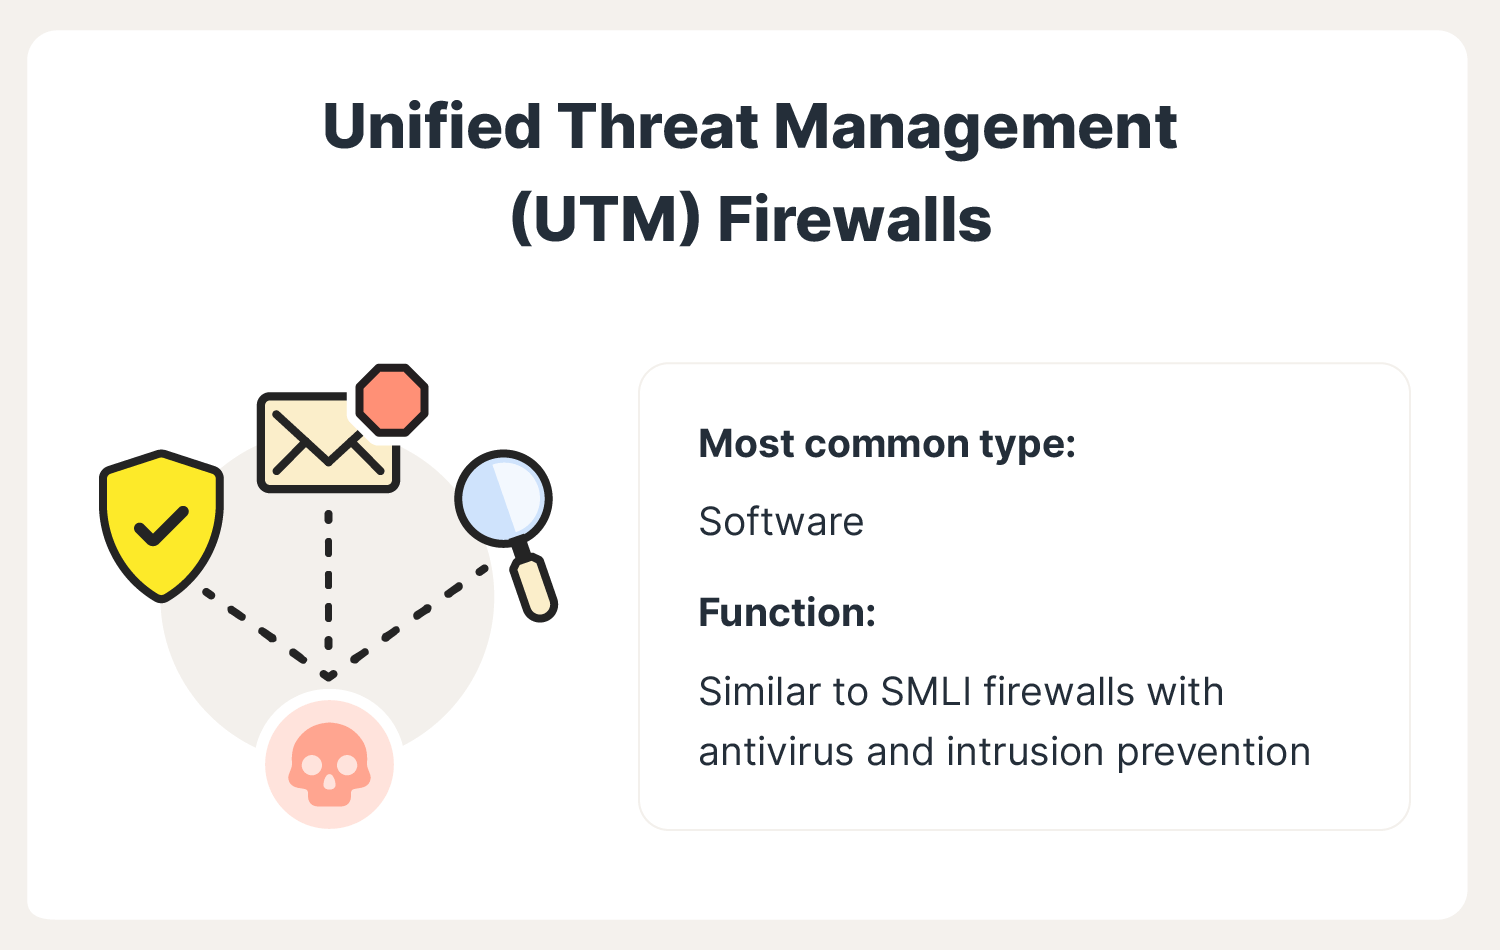 An image describes unified threat management firewalls, a popular type of firewall.